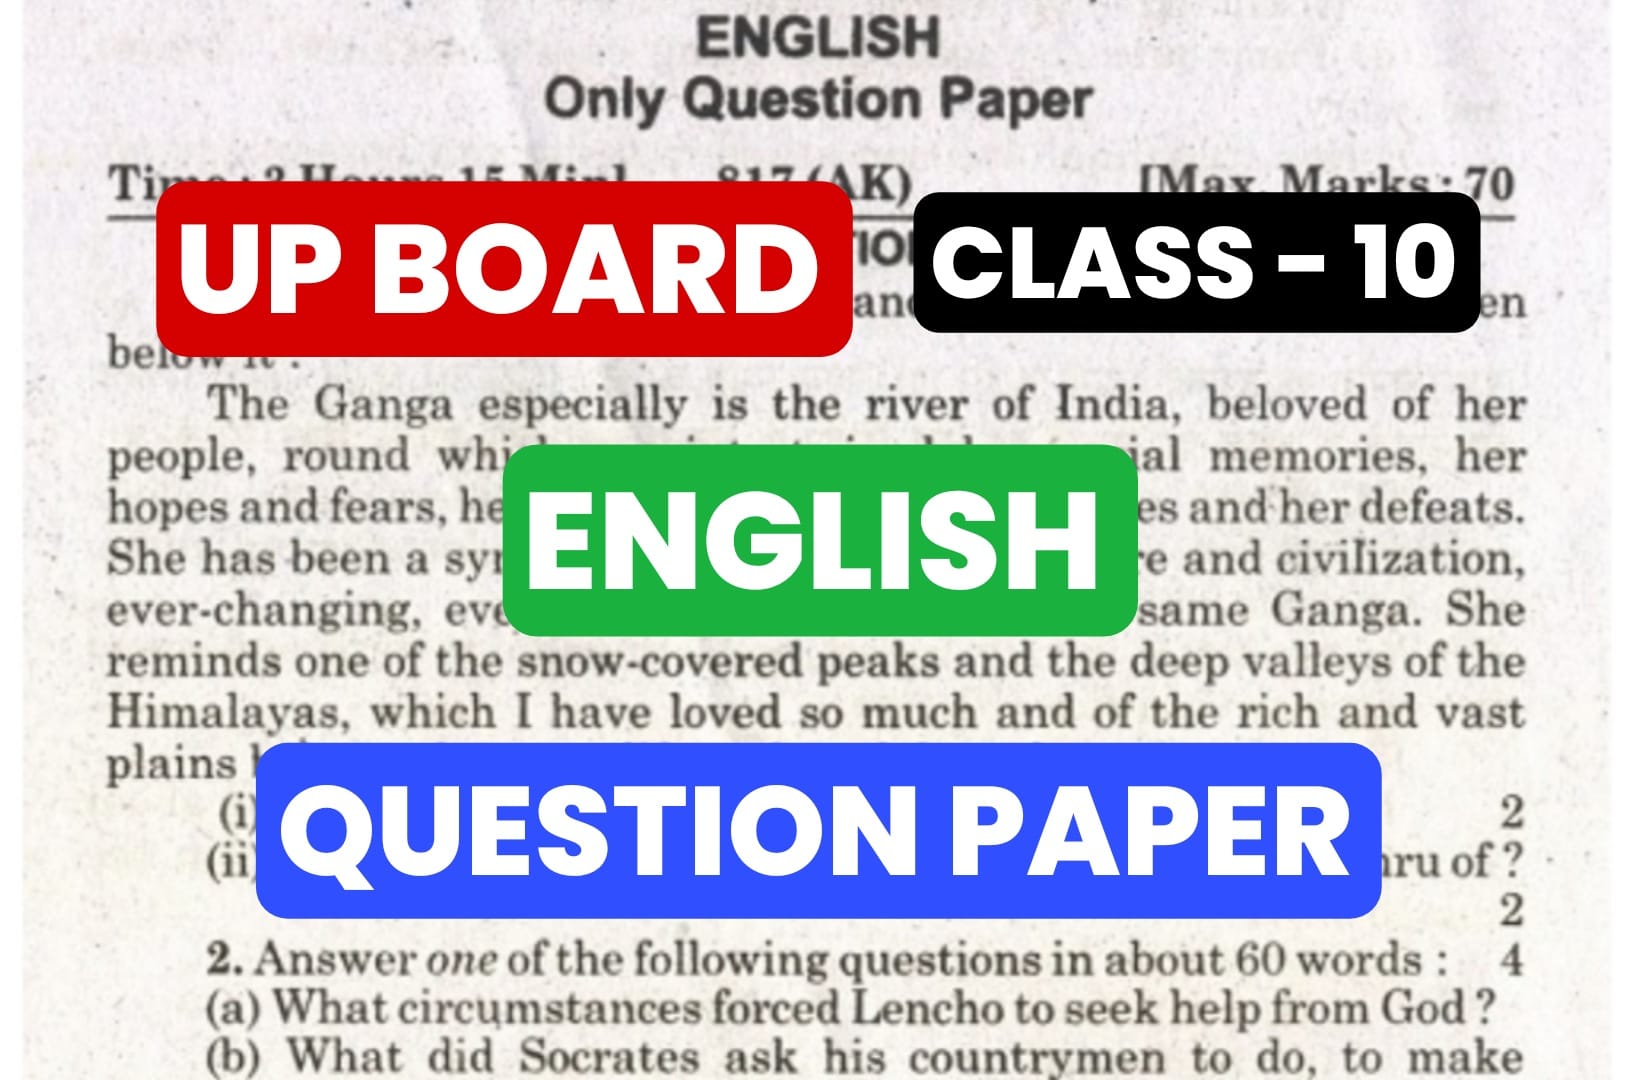 UP Board अंग्रेजी (English) का पिछले वर्ष का प्रश्न पत्र तुरंत करें डाउनलोड